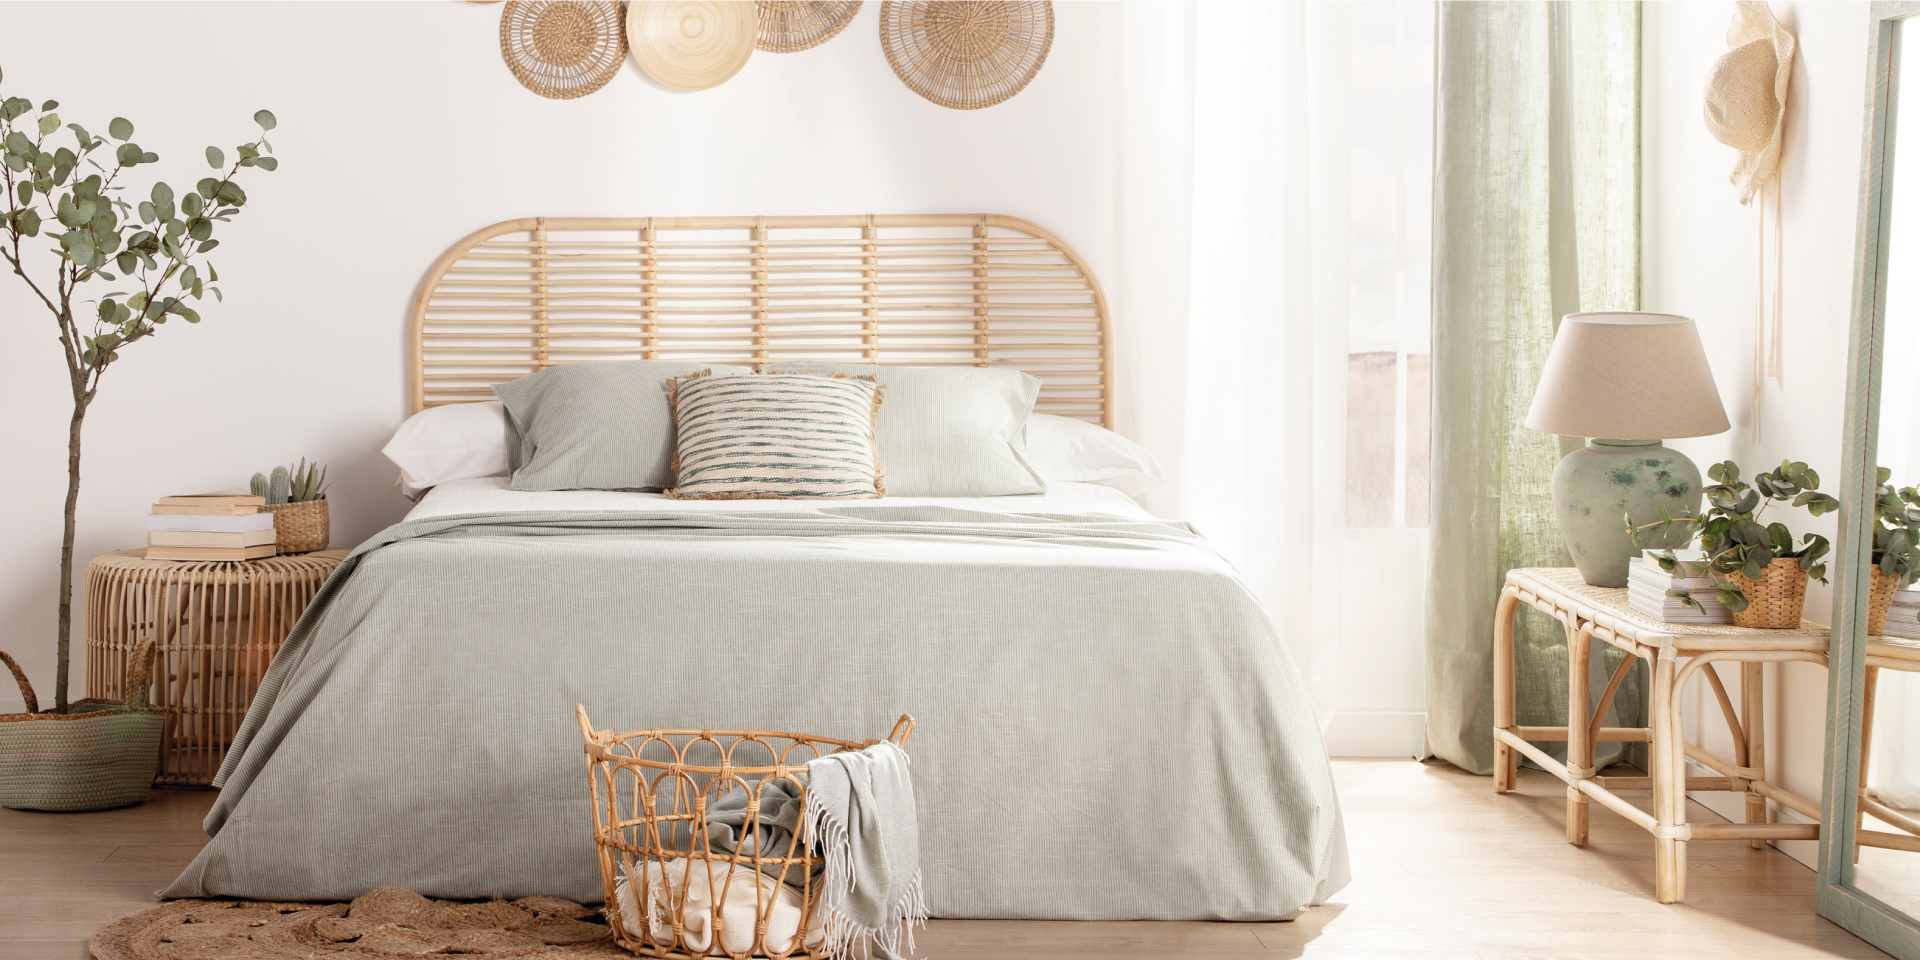 Composición elegante del interior del dormitorio con cama de madera,  muebles, decoración de alfombra, taburete, decoración de ratán, jarrones y  accesorios elegantes.